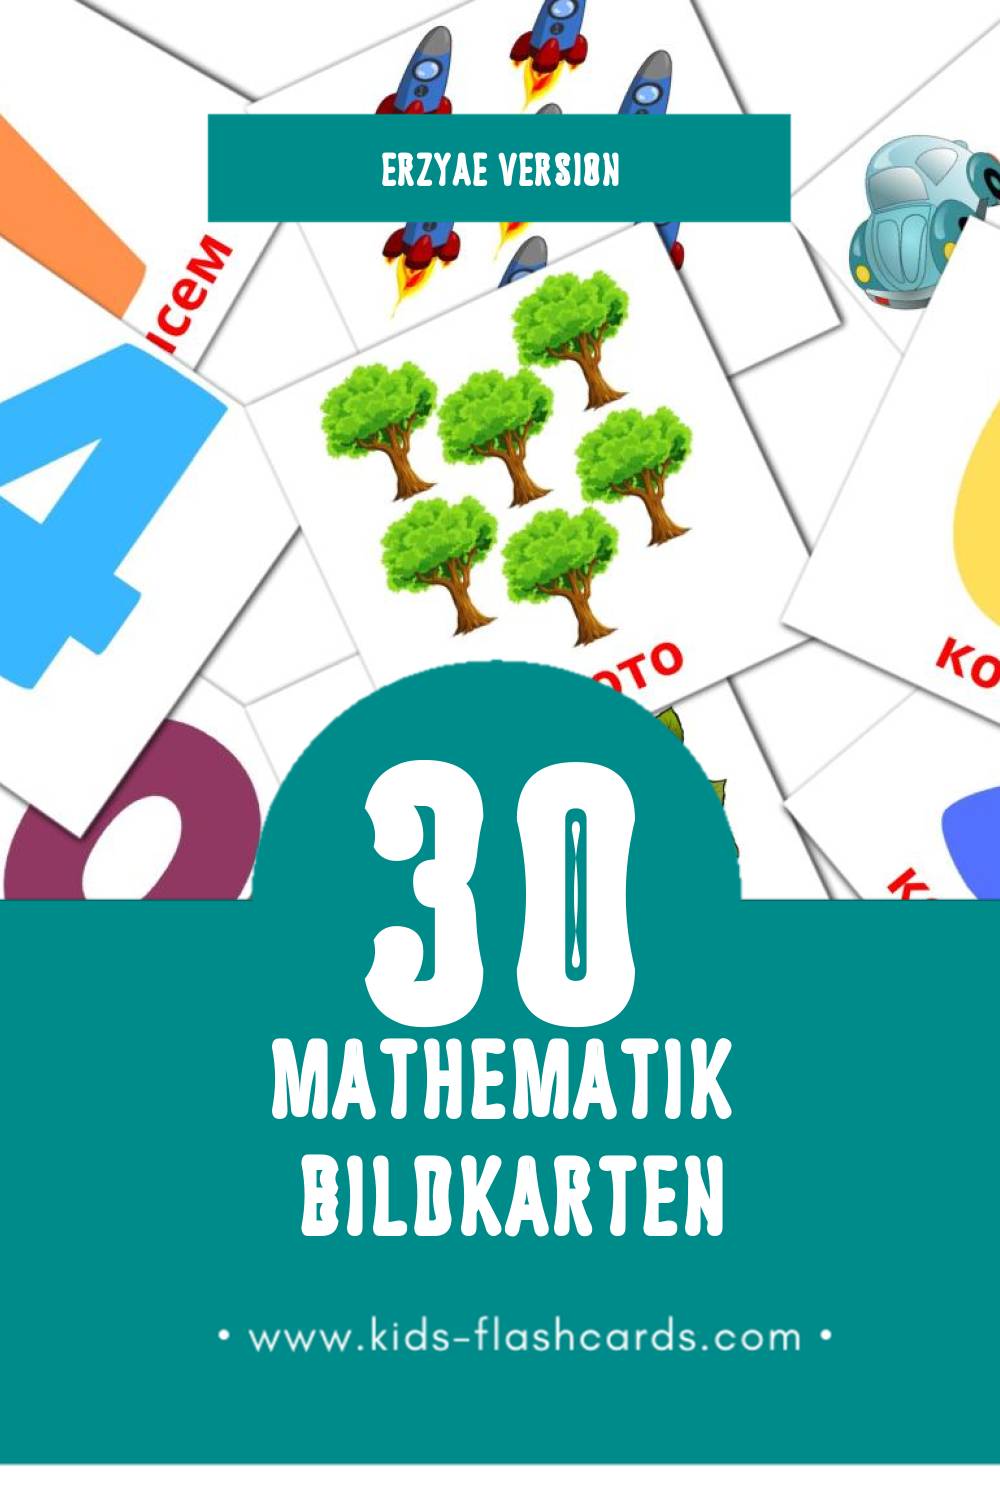 Visual Математика Flashcards für Kleinkinder (30 Karten in Erzya)